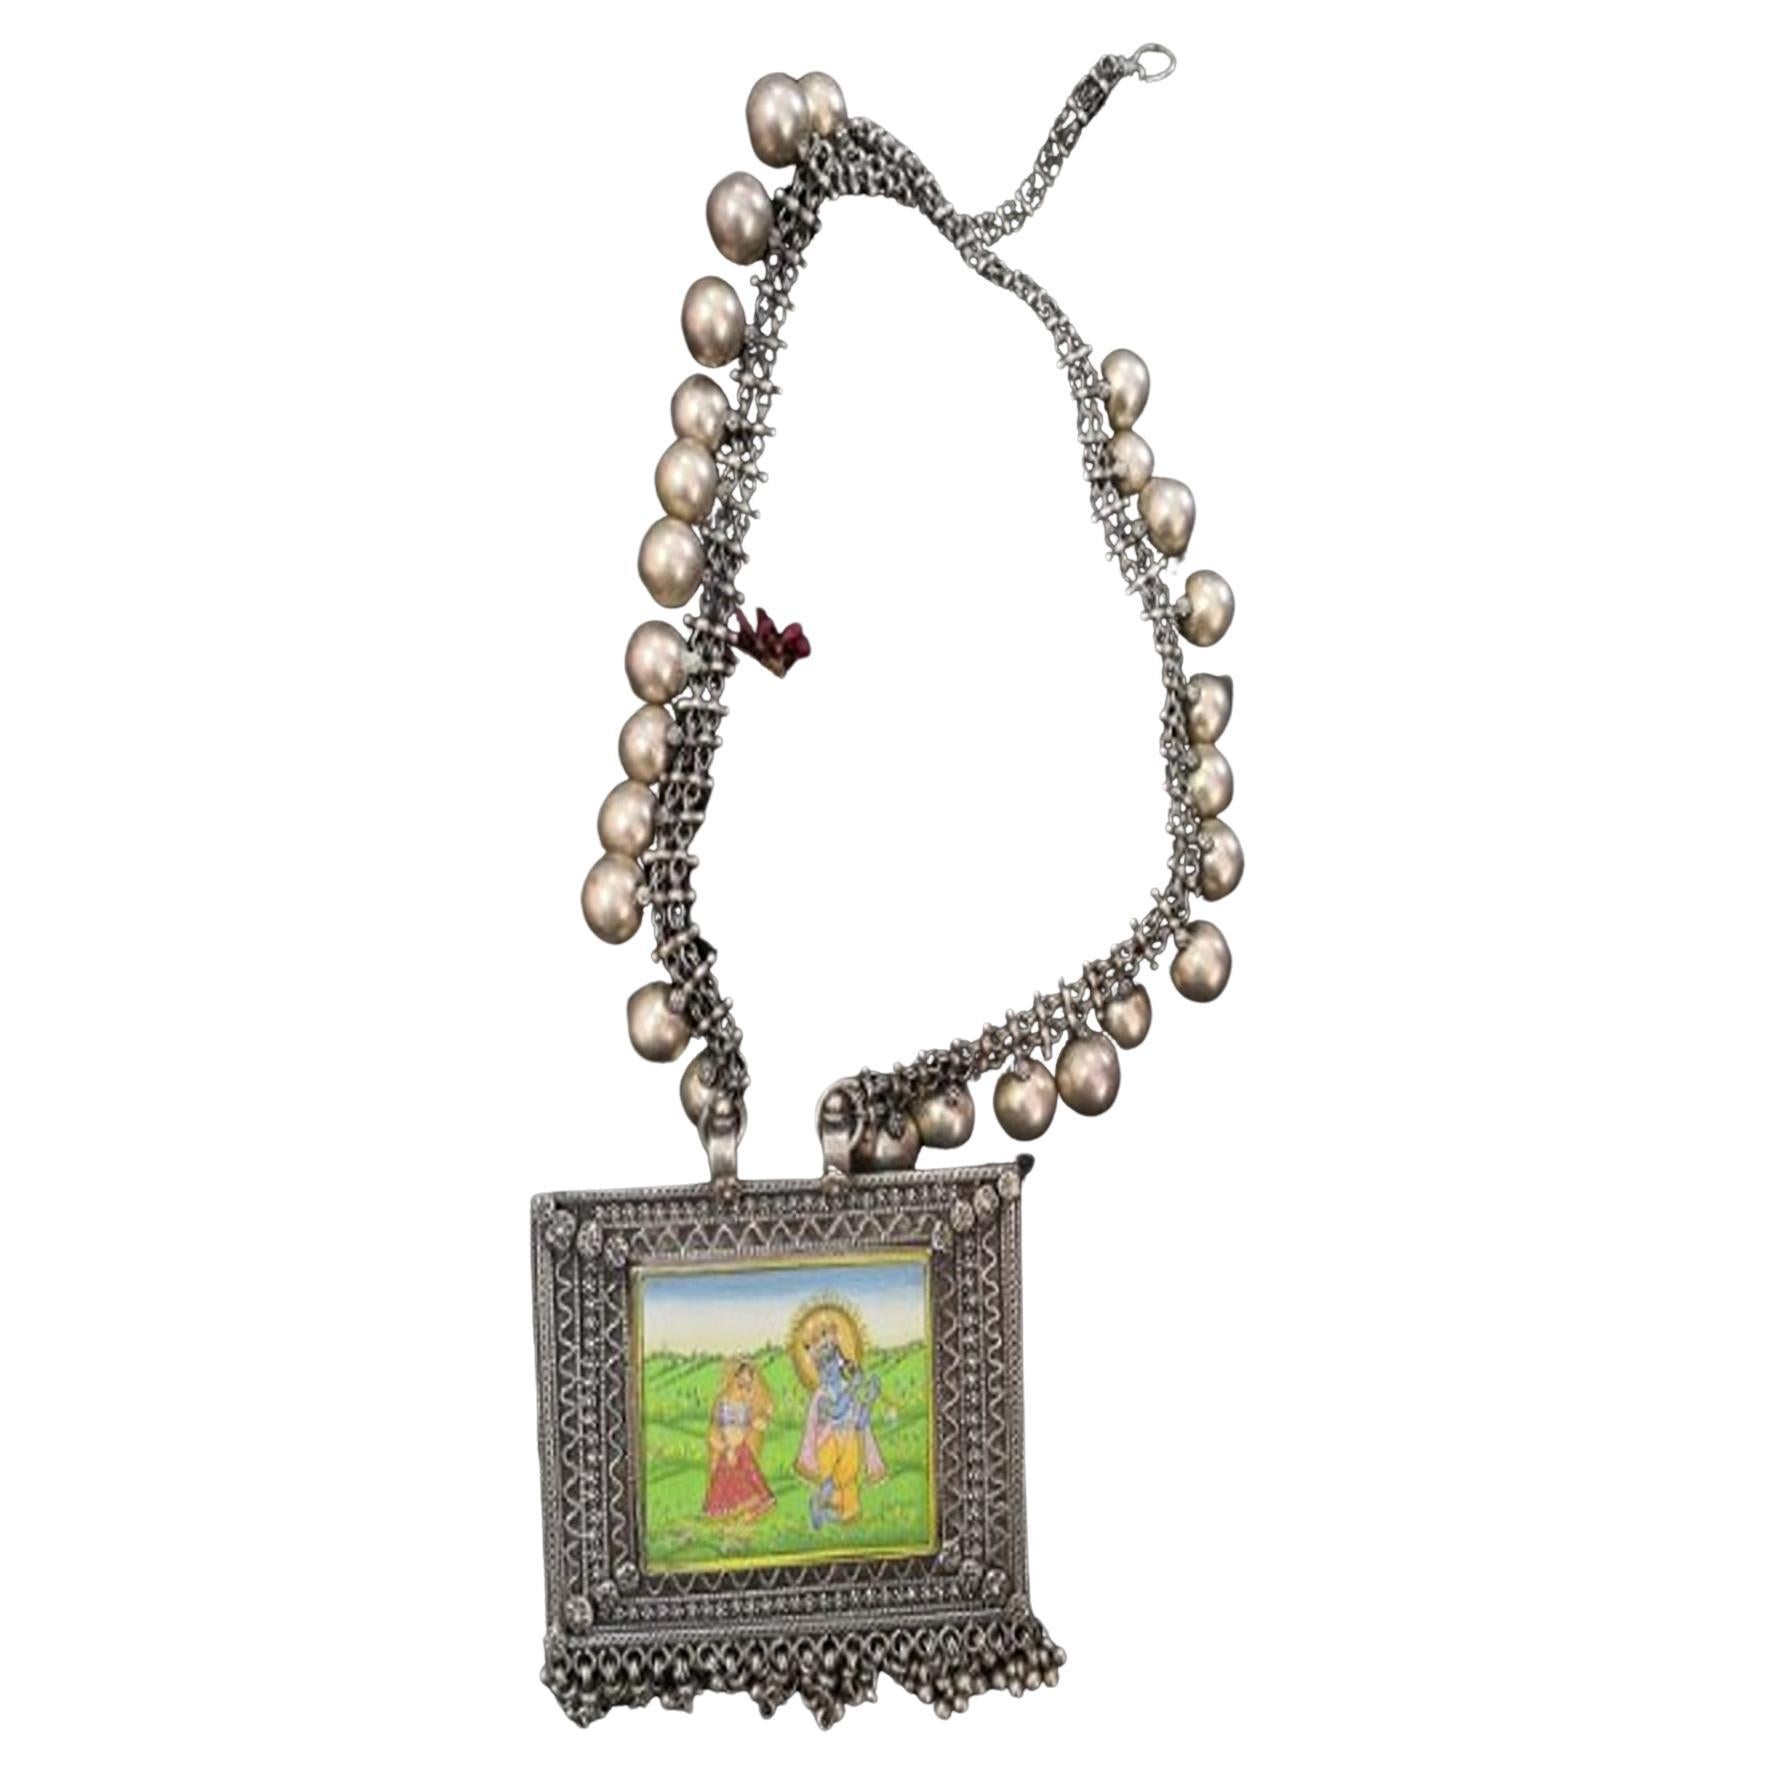 Krishna Oxidized Jewelry Indian jewelry, traditional Jewelry, Krishna thread  For Sale